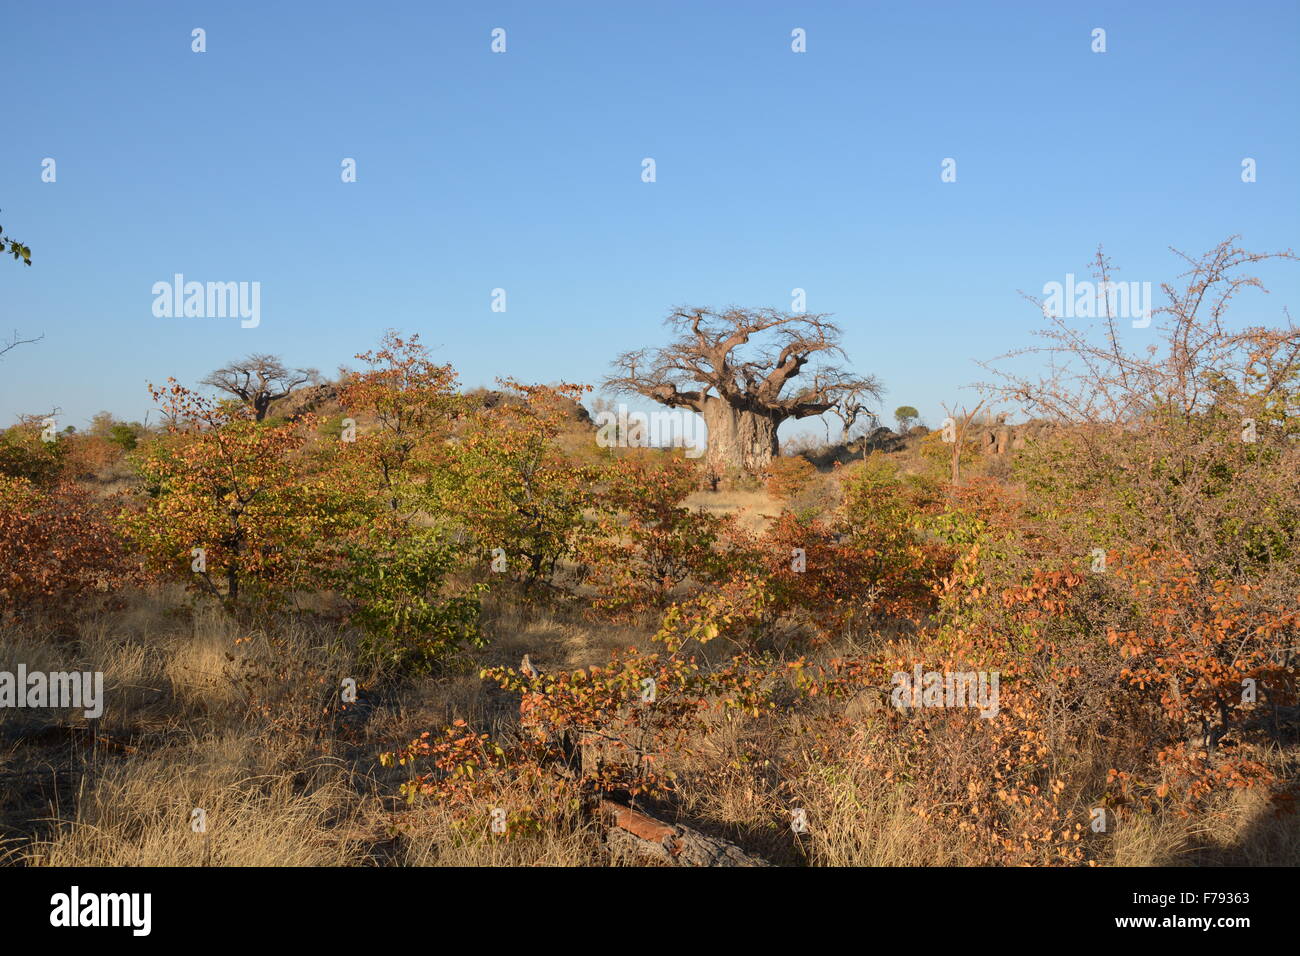 Antiguo árbol baobab se cree que alrededor de 1,000 años de antigüedad en el Tuli Botswana. Durante la estación seca, cuando las hojas han caído. Foto de stock